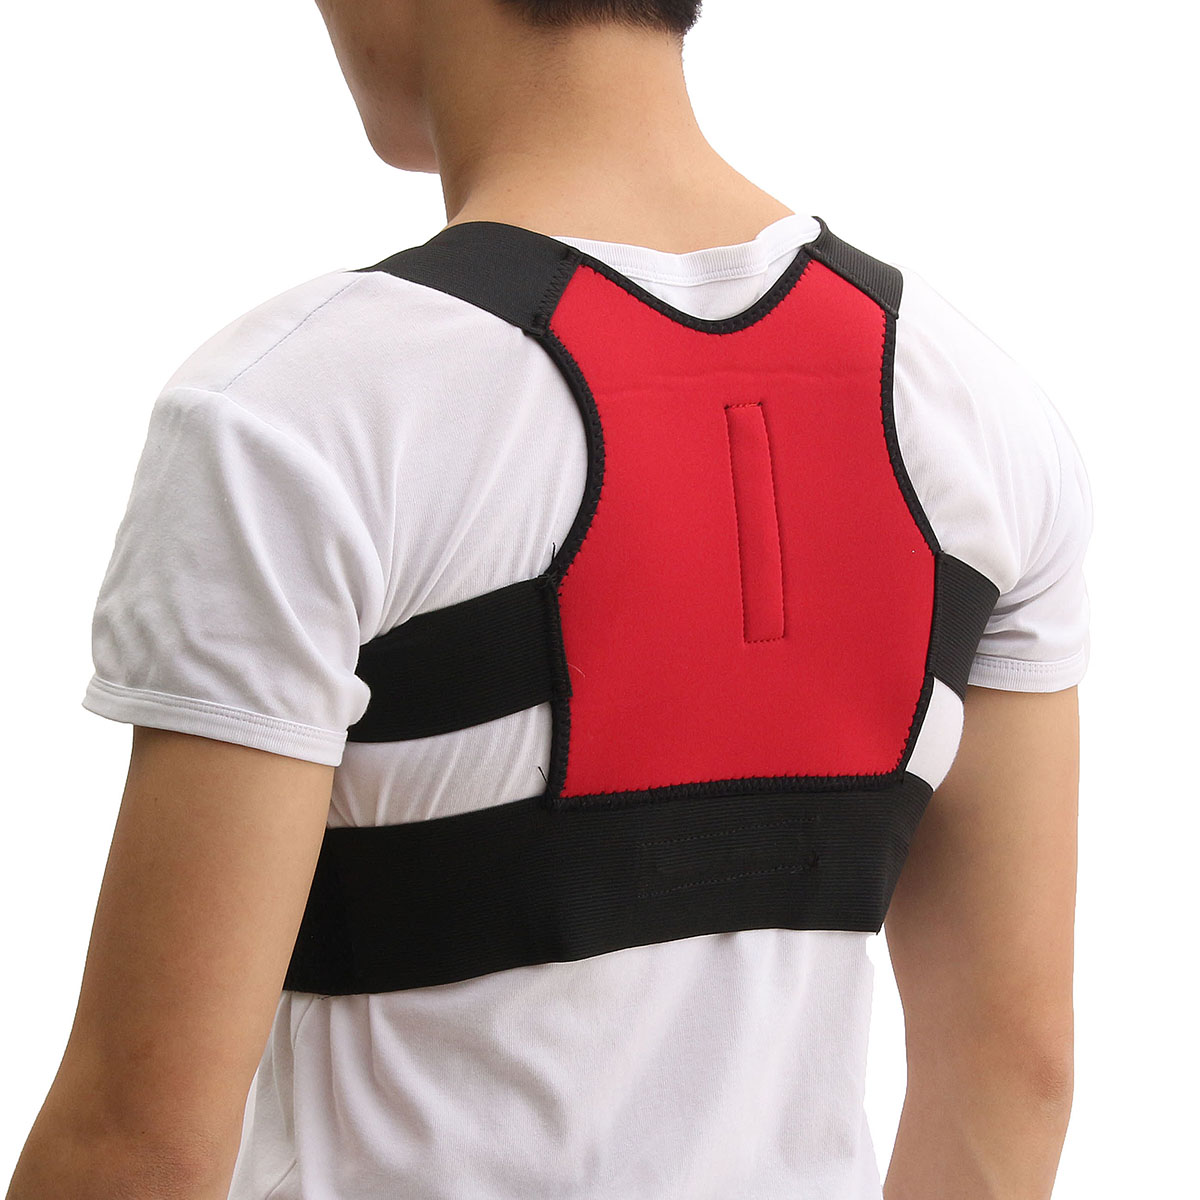 

Unisex Back Support Posture Corrector Lumbar Correction Shoulder Brace Belt